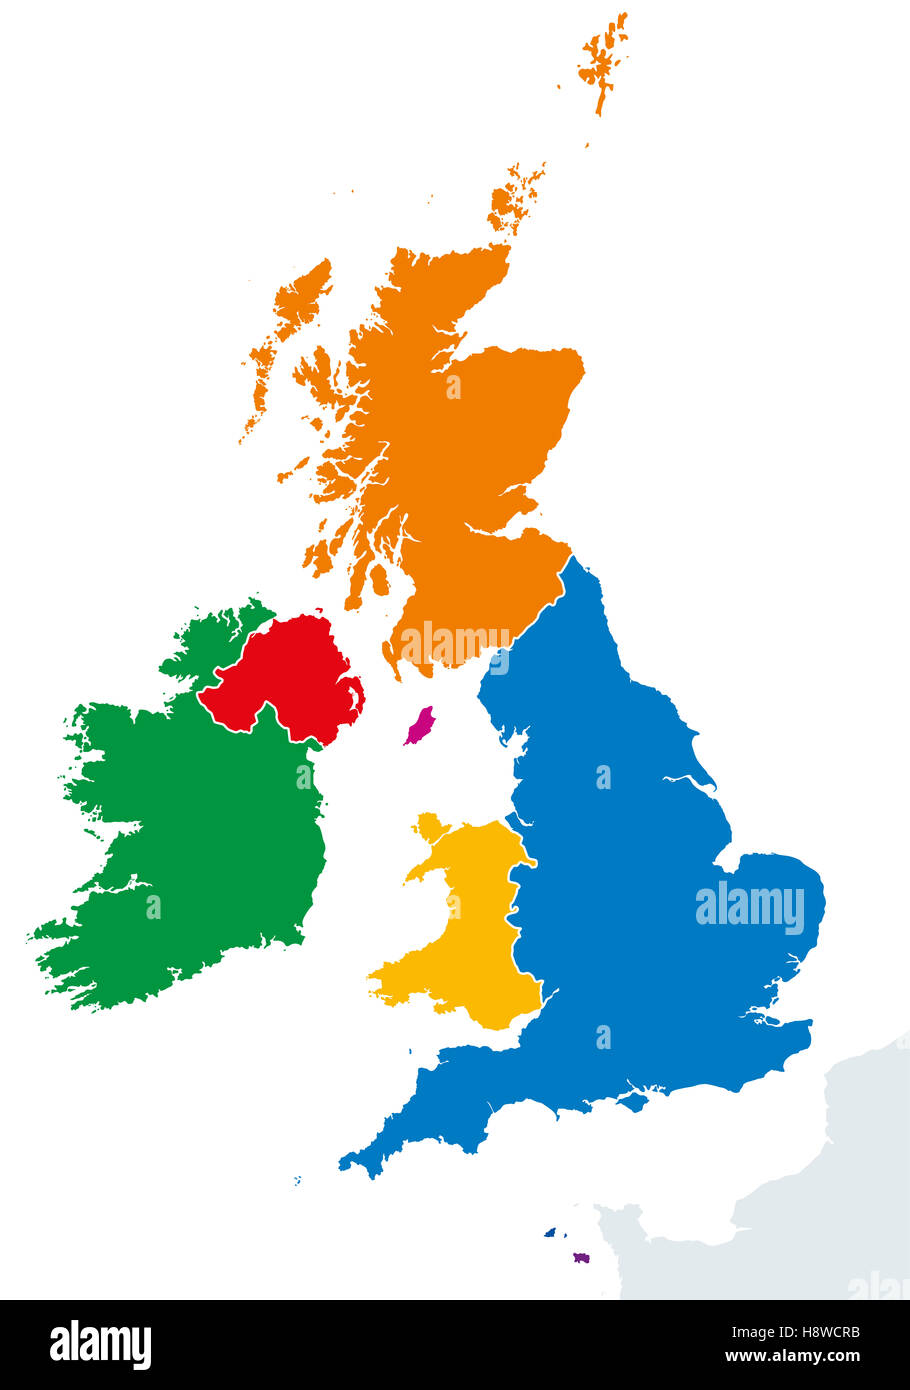 Îles britanniques silhouettes pays carte. L'Irlande et du Royaume-Uni, Angleterre, Ecosse, Pays de Galles et d'Irlande du Nord. Banque D'Images